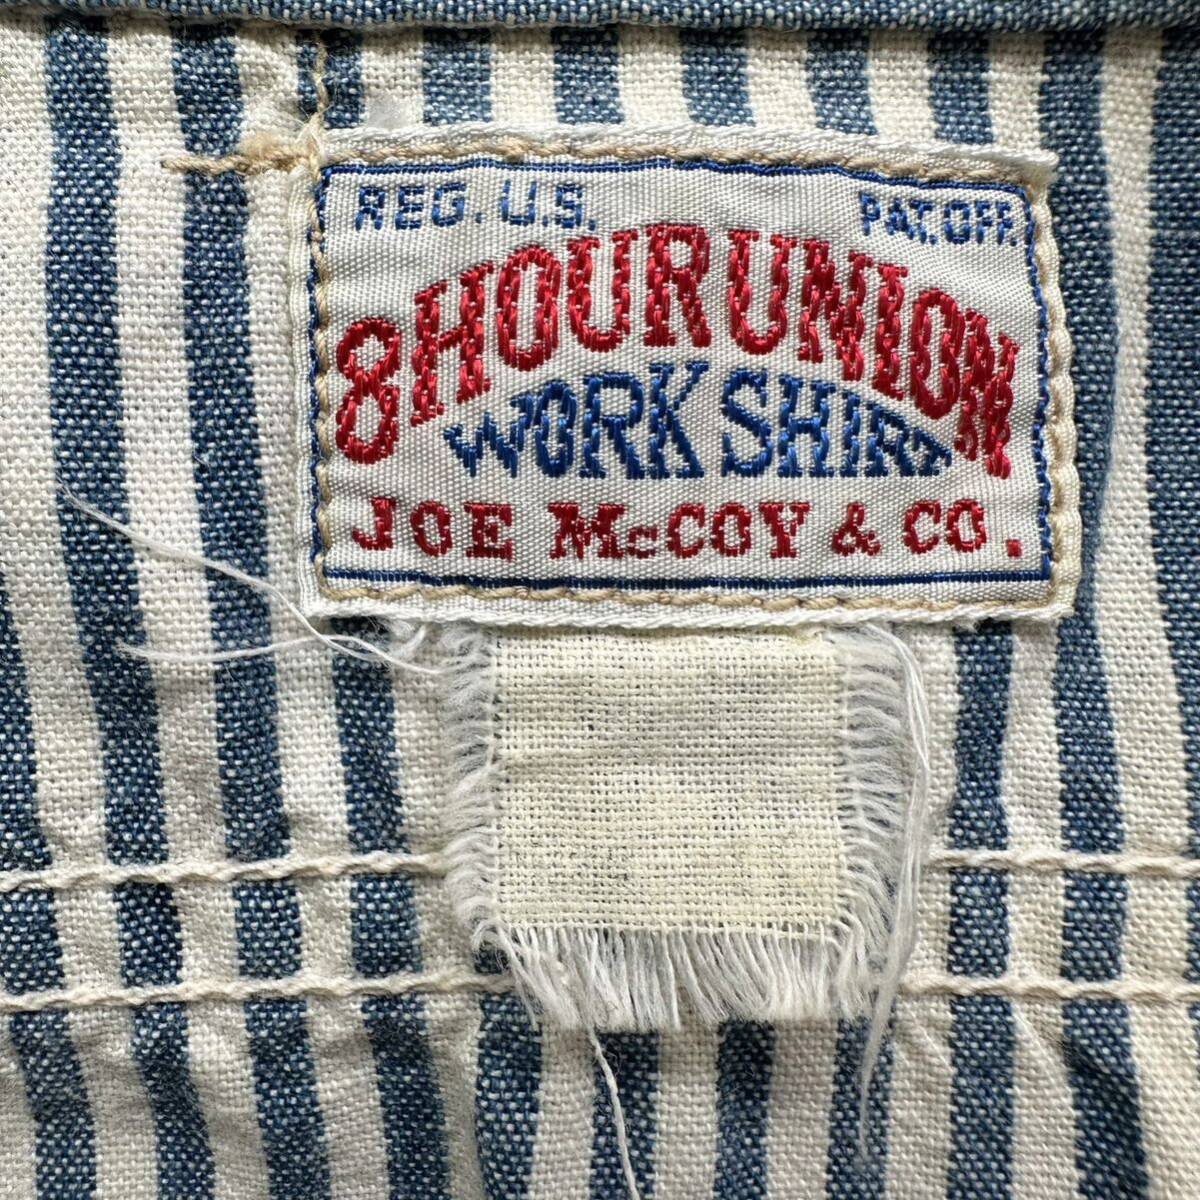 【JOE McCOY】ジョーマッコイ 8hour union ハーフジップシャツ